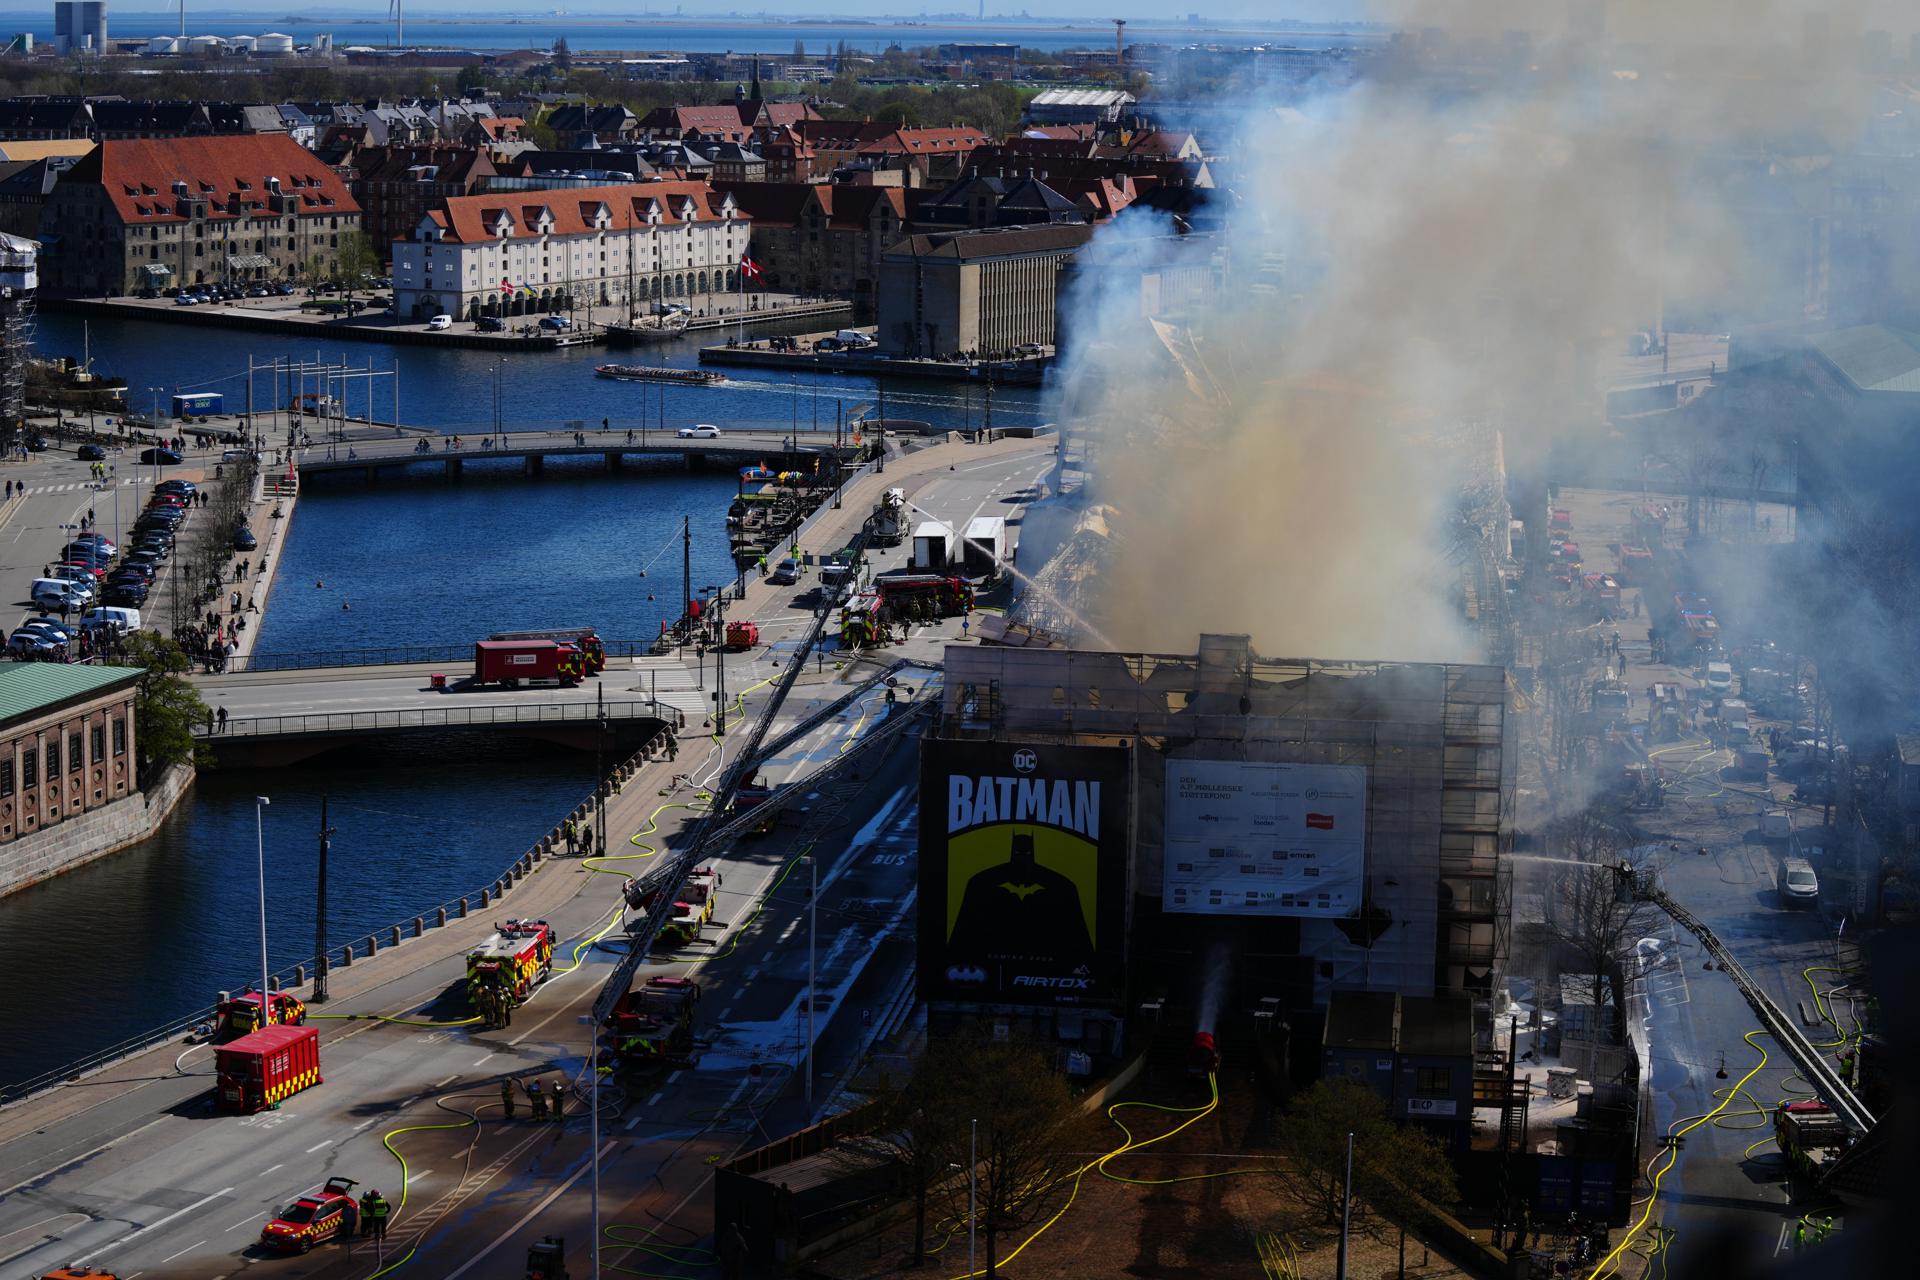 En imágenes: Incendio en antigua bolsa de Copenhague continúa fuera de control